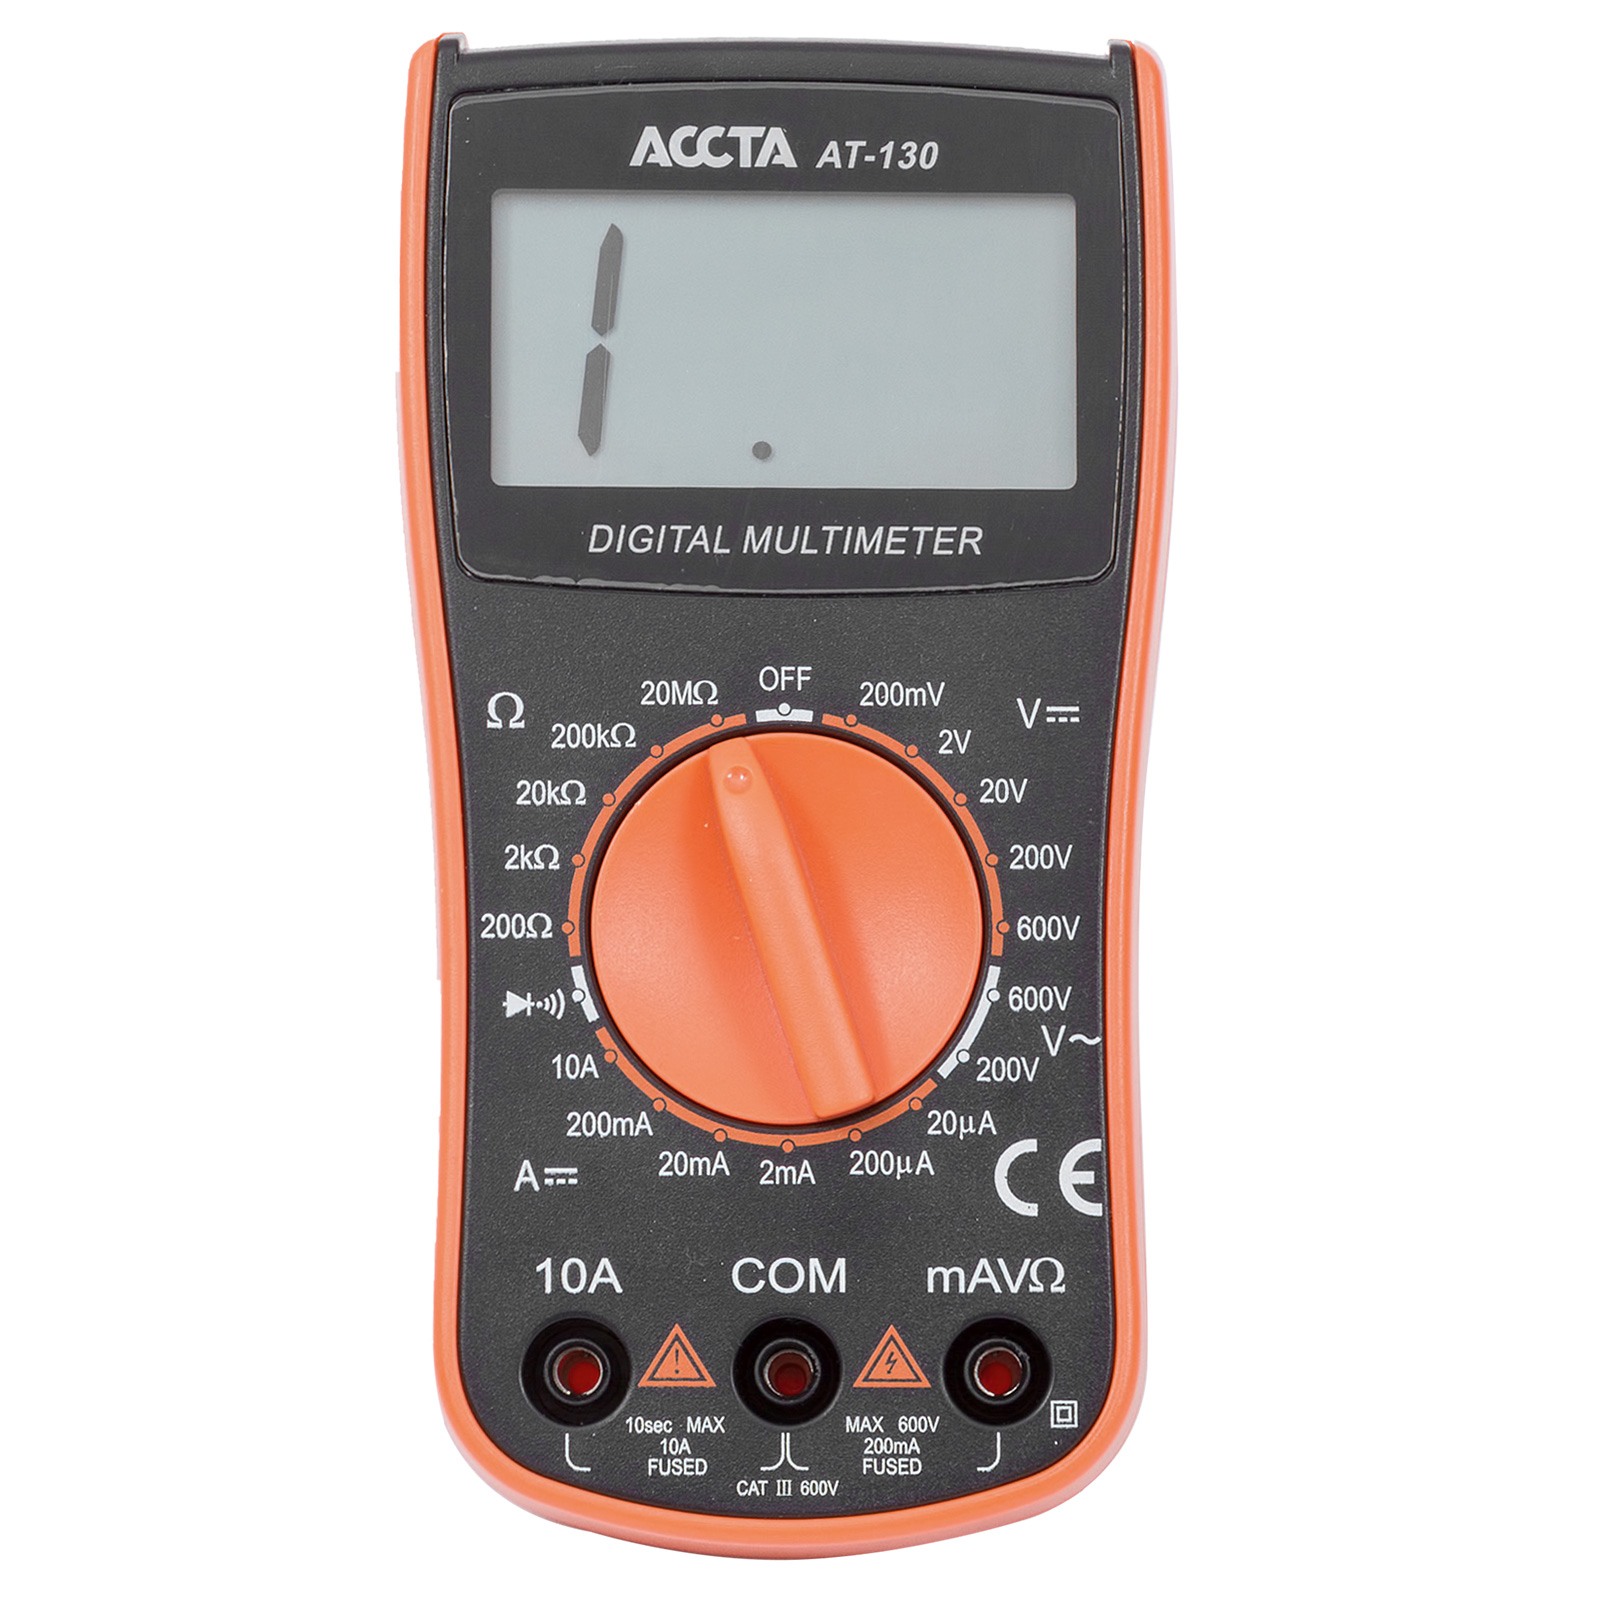 Digital Multimeter Accta AT-130